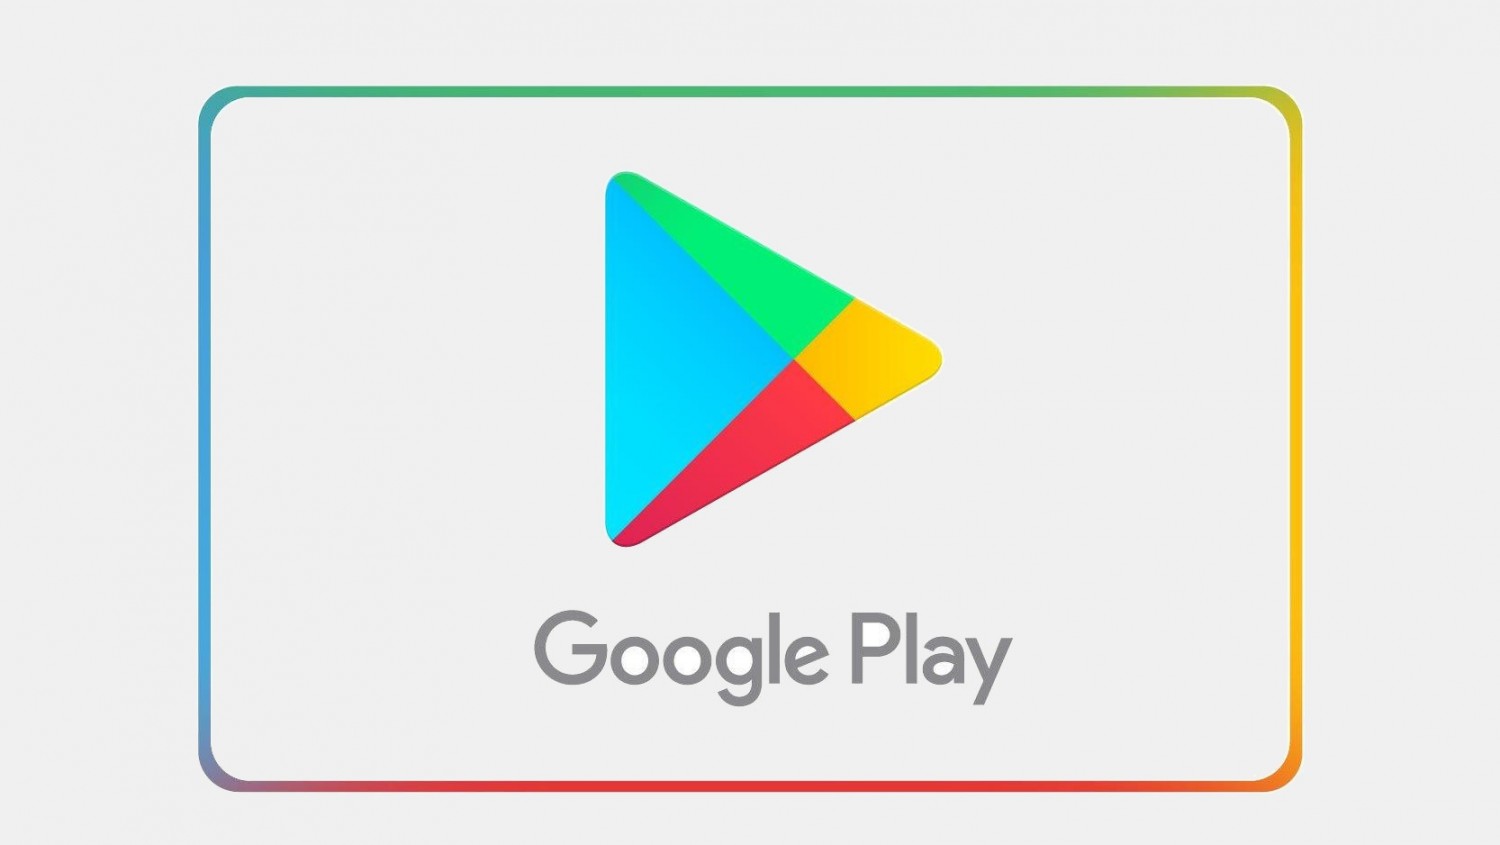 Разработчики обязаны обновить свои приложения для работы с Android 9 Pie для публикации в Google Play